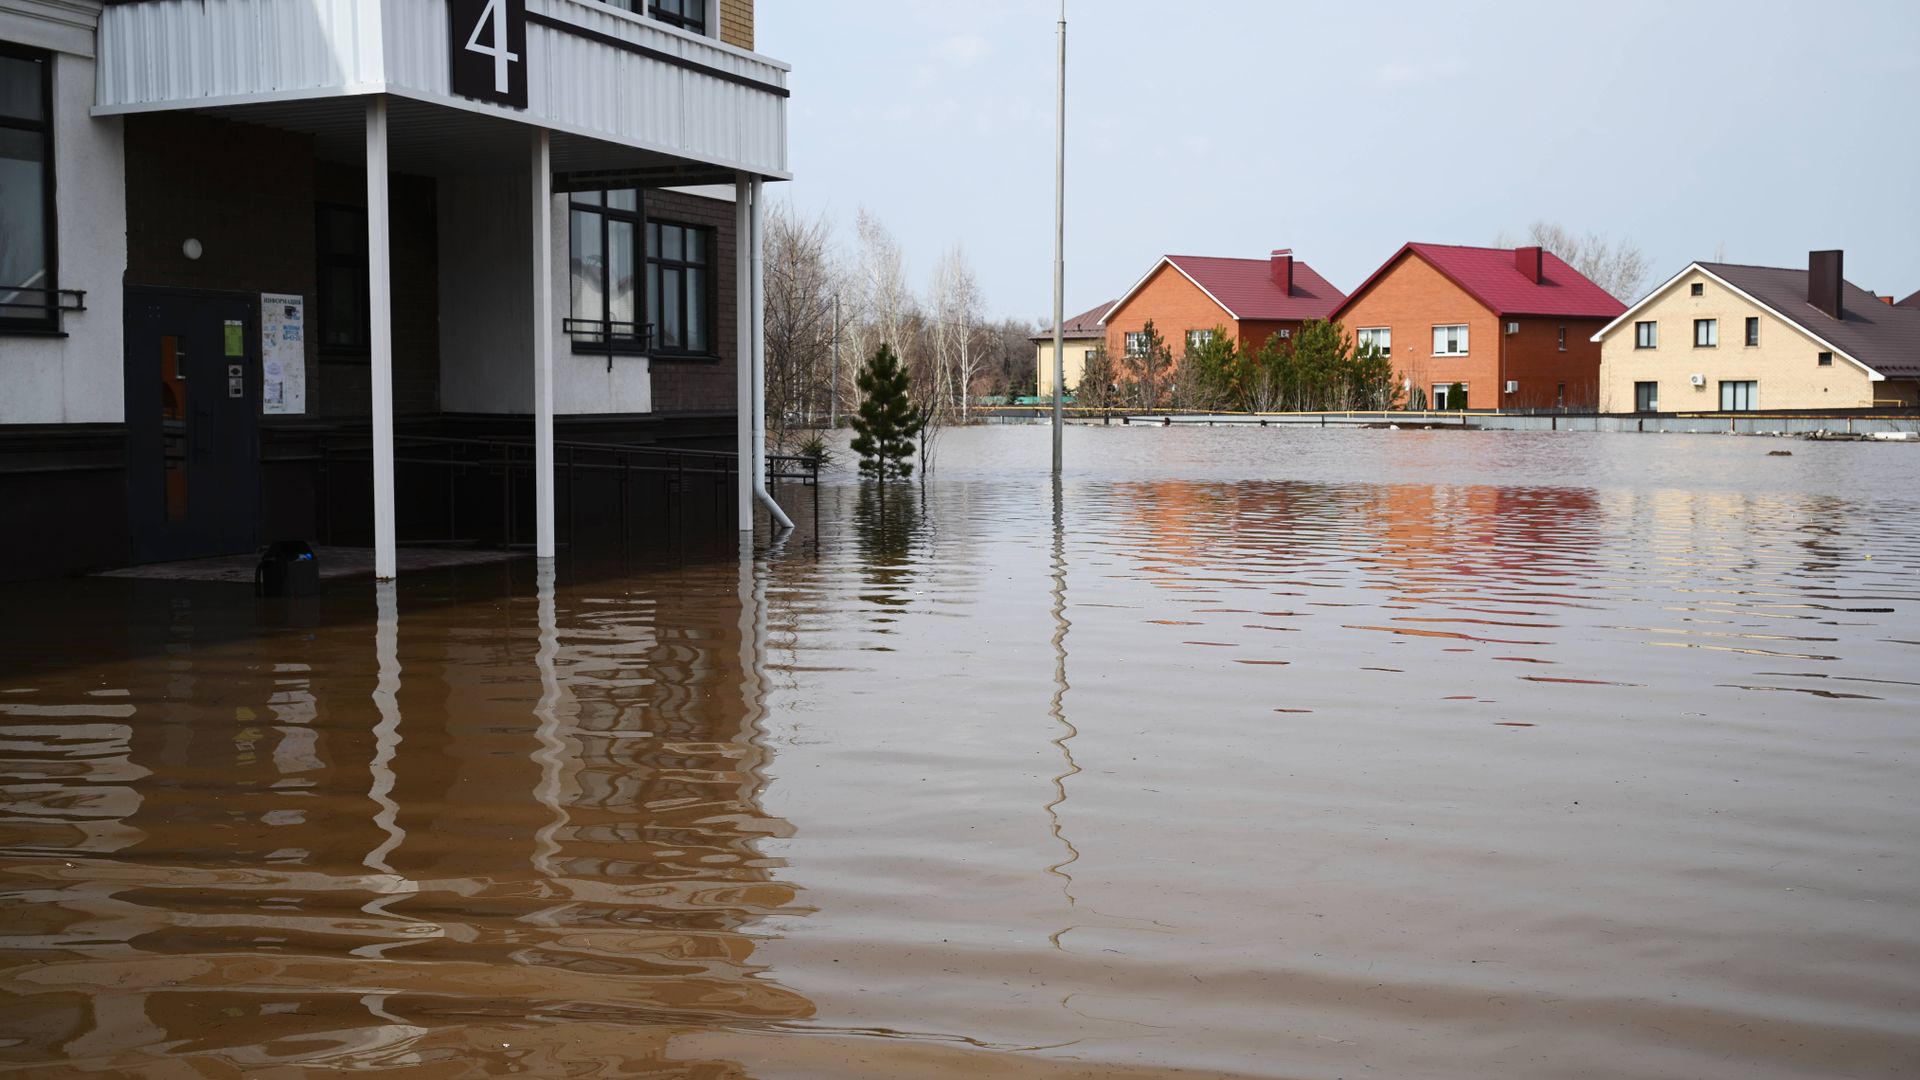 orenburg: russische behörden evakuieren großstadt wegen überschwemmungen